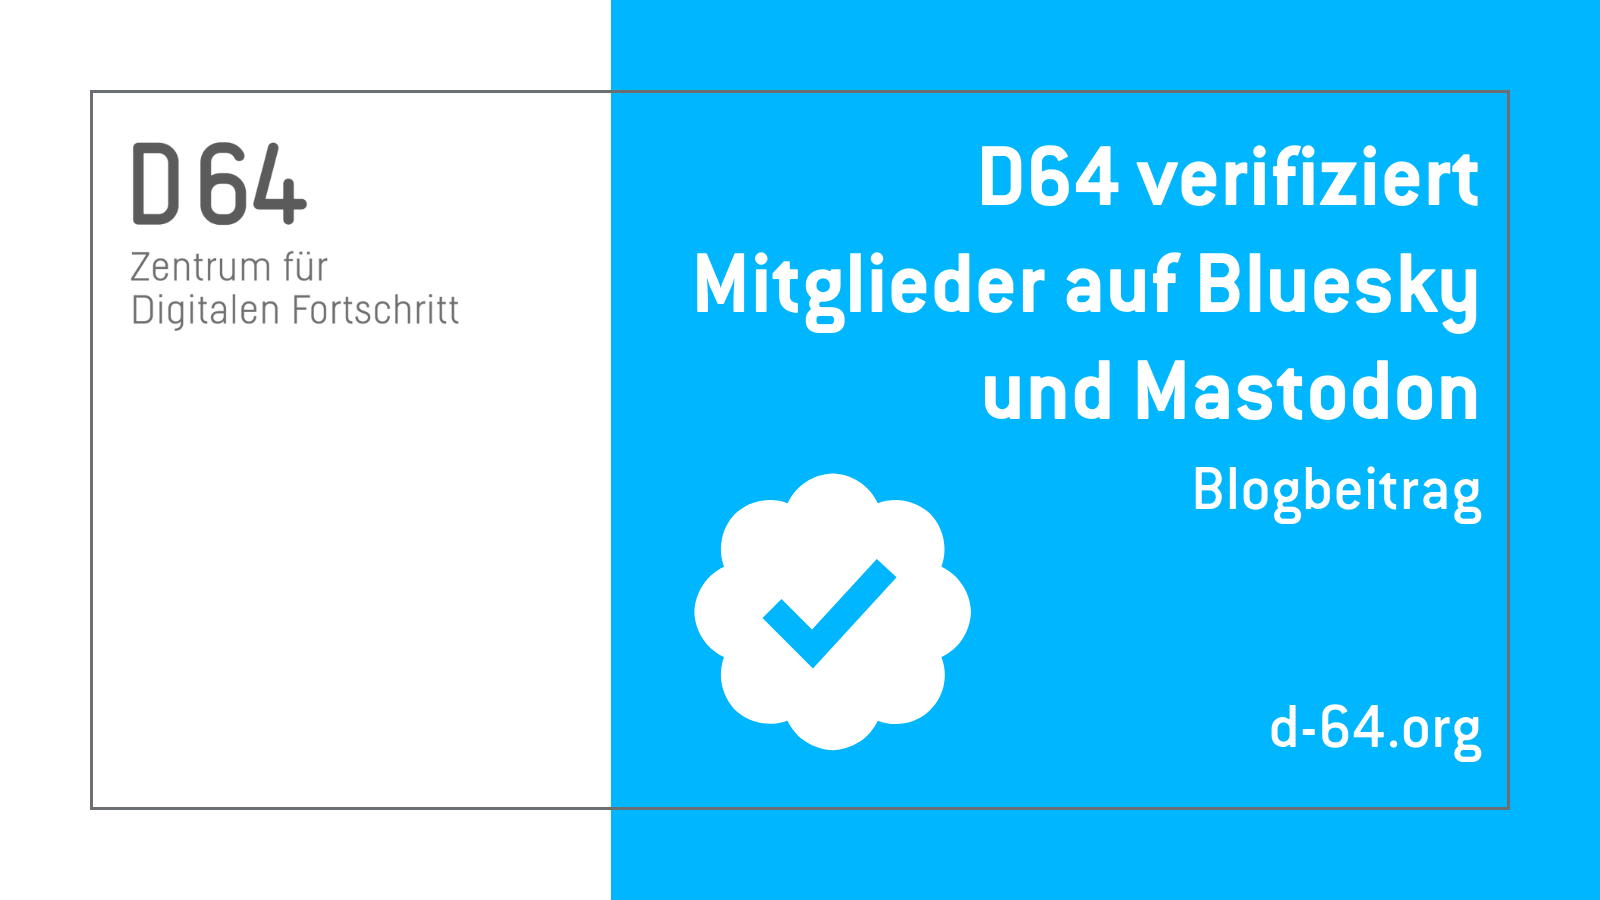 Sharepic von D64. Auf blauem Hintergrund steht "D64 verifiziert Mitglieger auf Bluesky und Mastodon. d-64.org" Daneben steht die Illustration eines Verifizierungs-Häkchens.